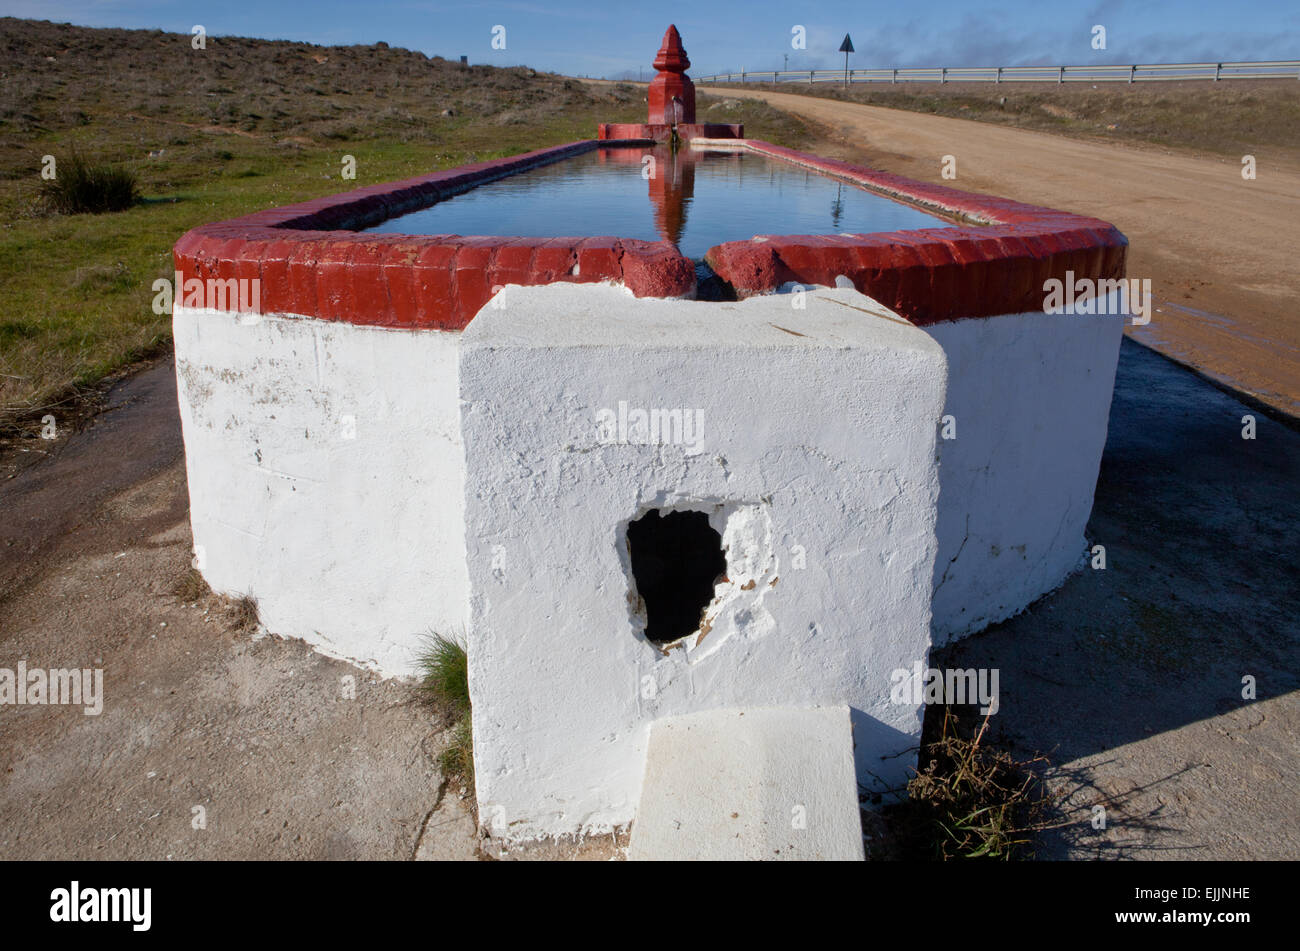 Fontaine bassin rural et avec des conteneurs pour des fins d'élevage en agriculture, Espagne Banque D'Images